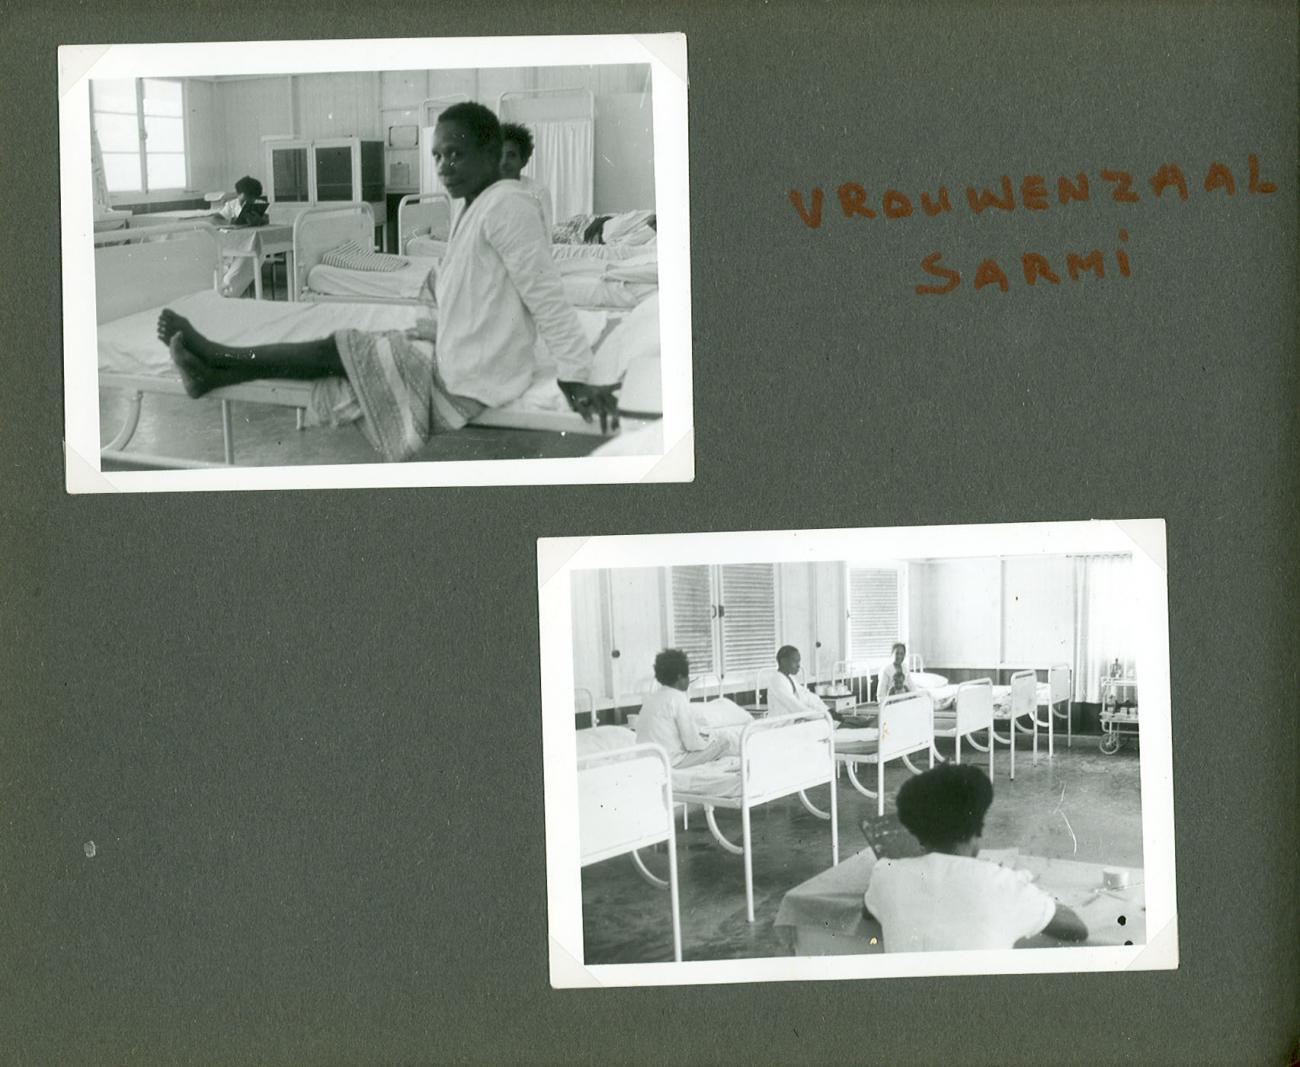 BD/83/107 - 
Vrouwenzaal van het ziekenhuis in Sarmi
